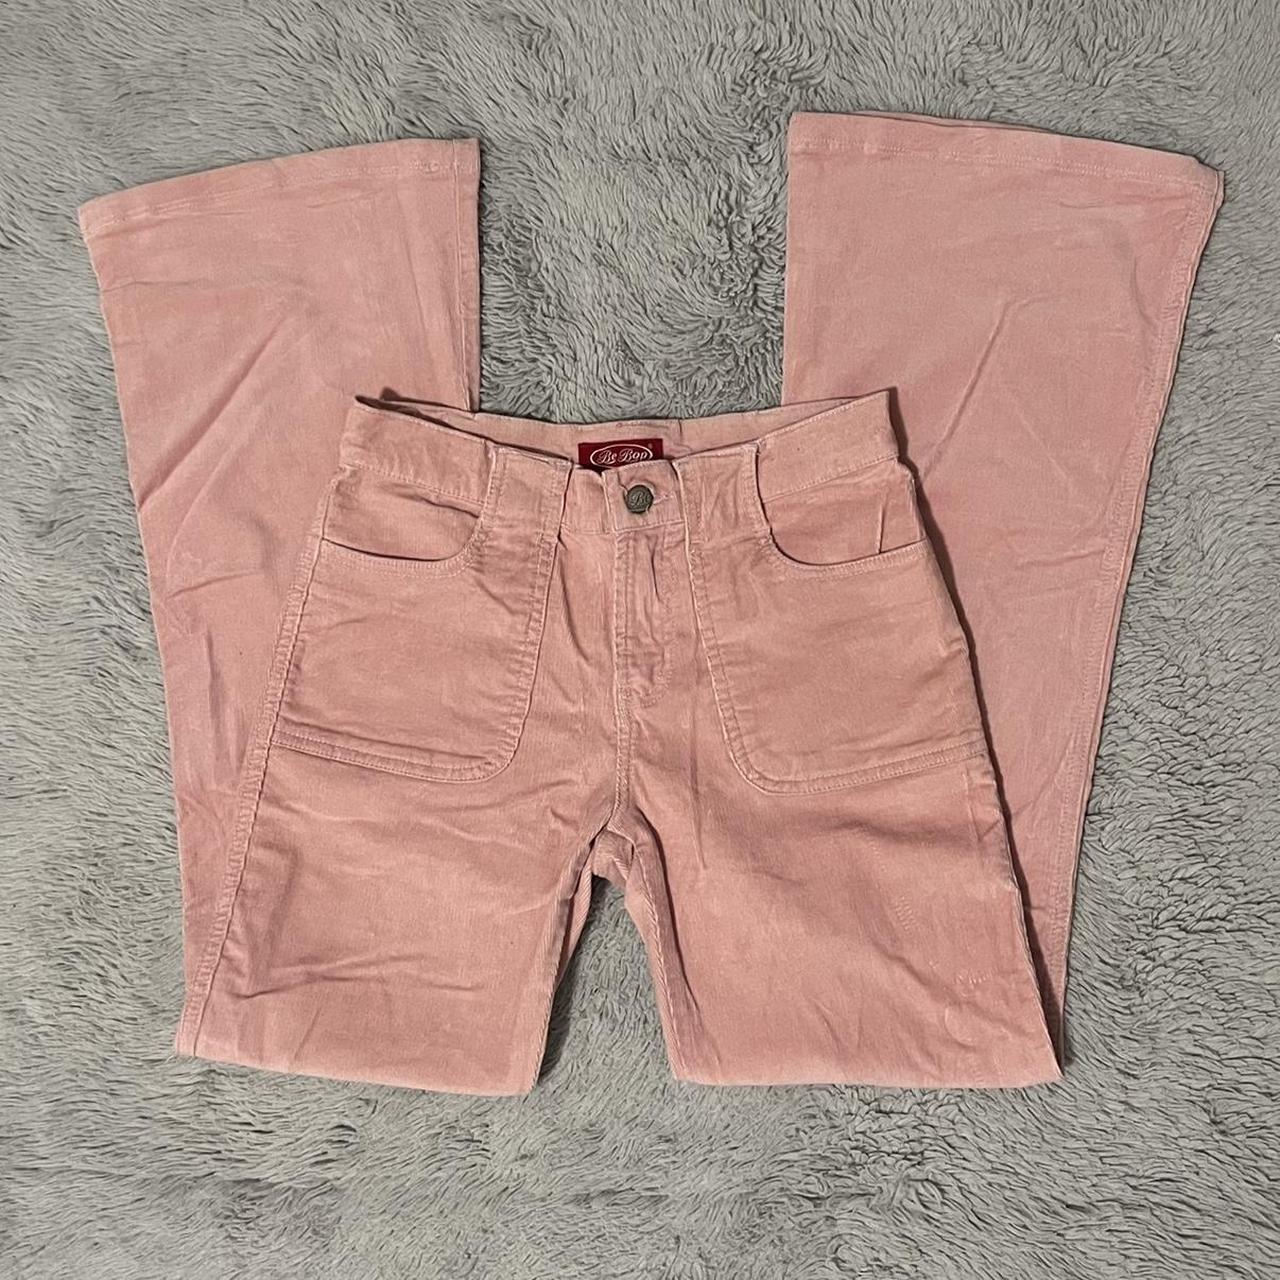 Red/pink Empire baggy corduroy pants #y2k #pink - Depop